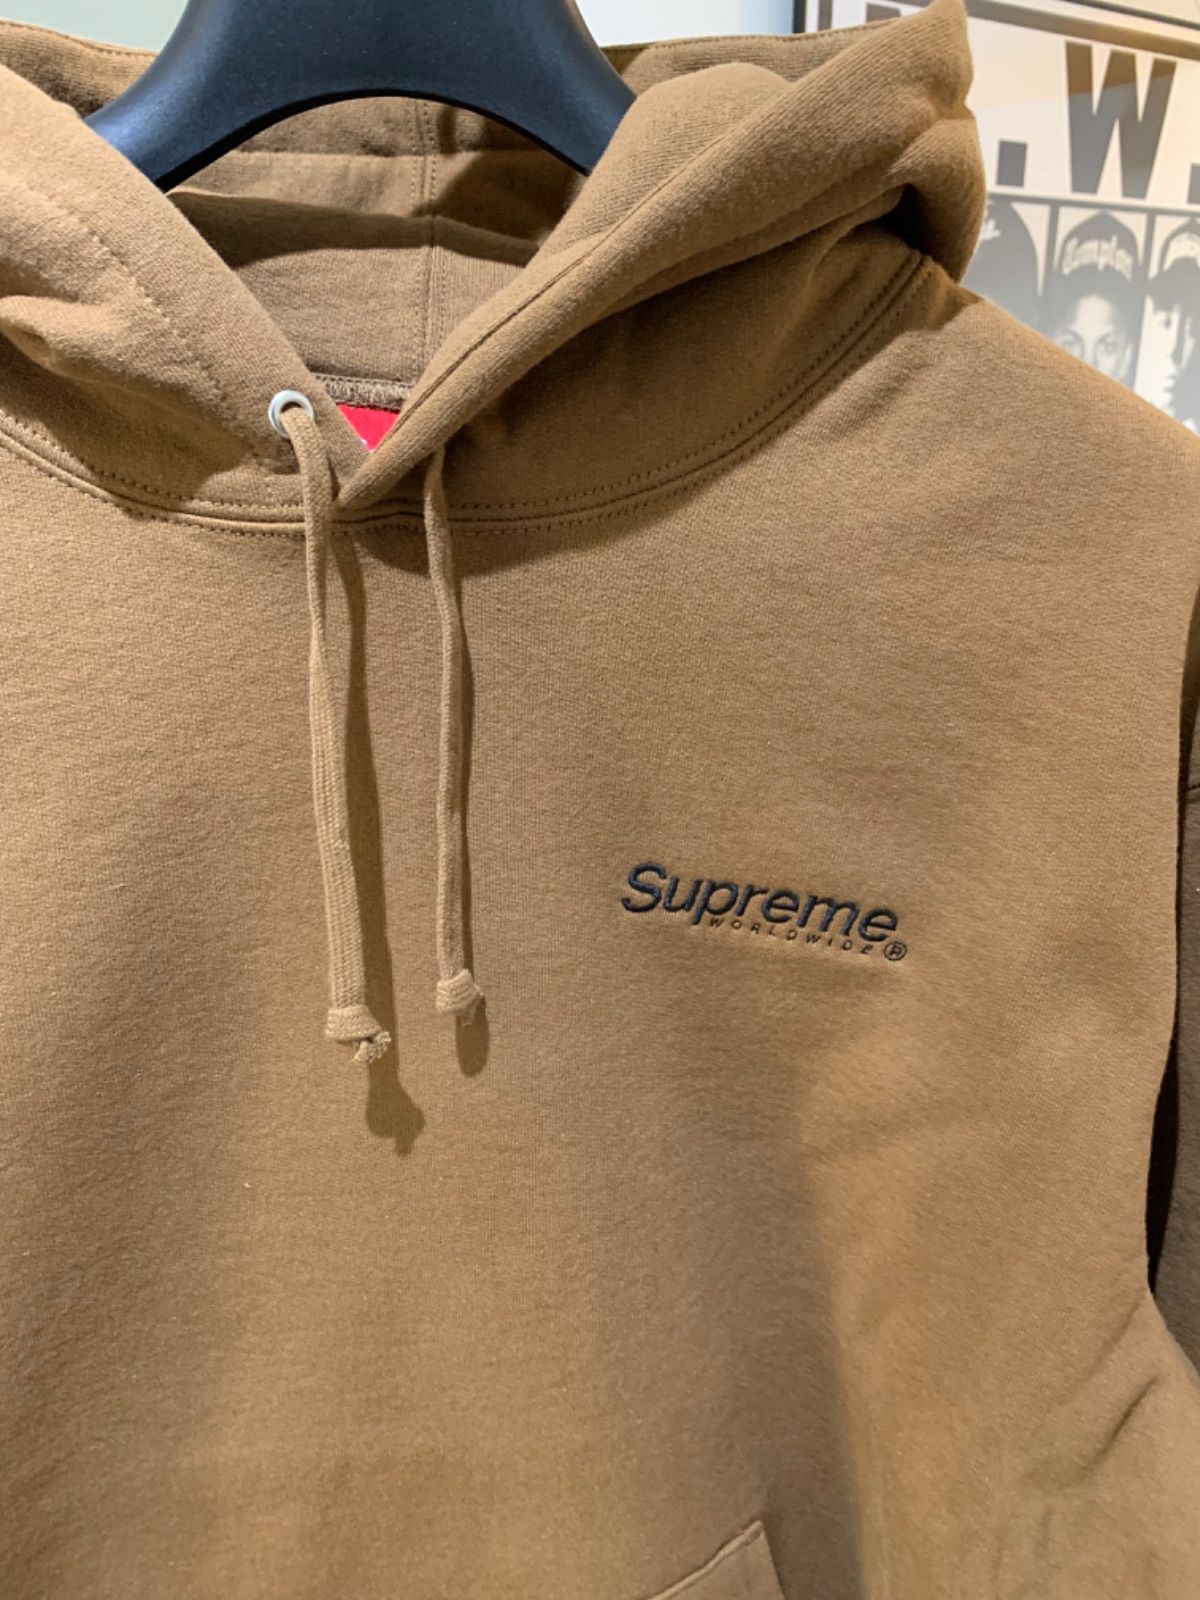 Supreme Worldwide Hooded Sweatshirt